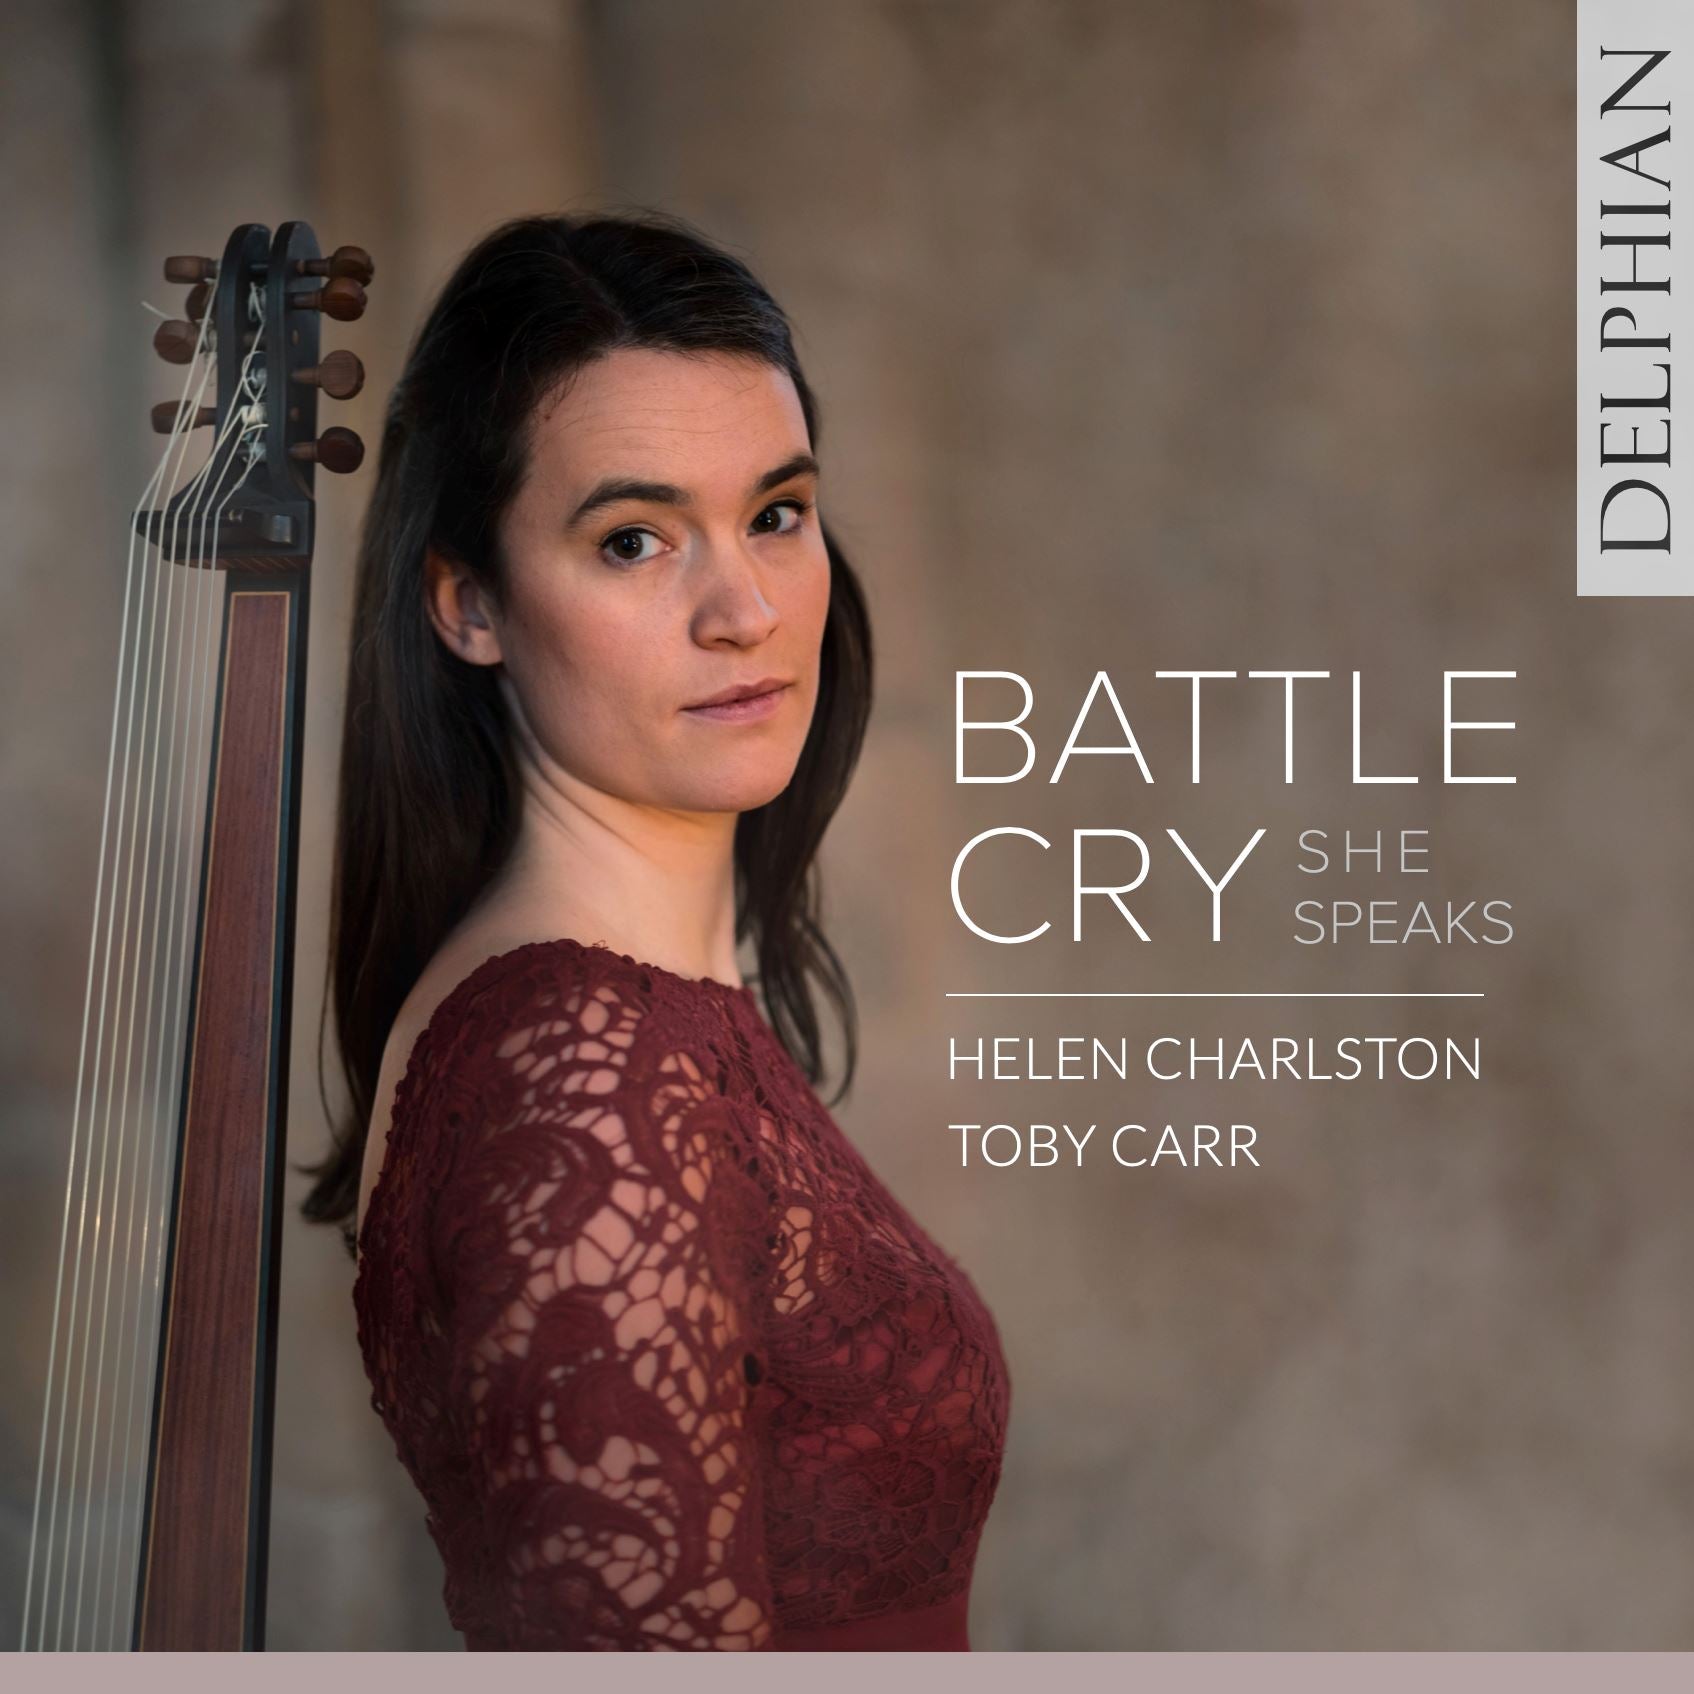 Battle Cry: She Speaks CD Delphian Records